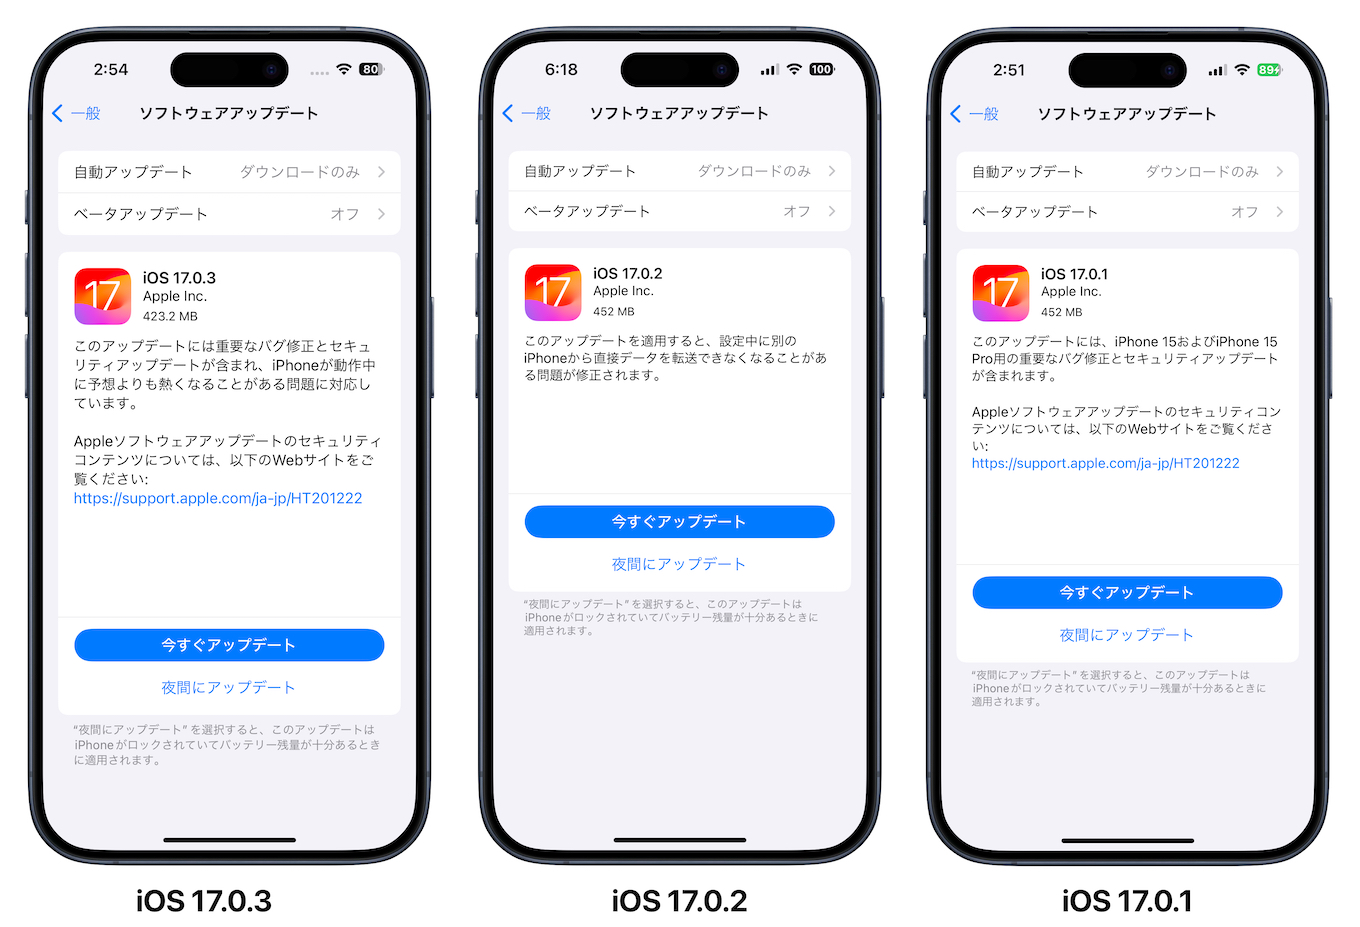 iOS 17.0.x